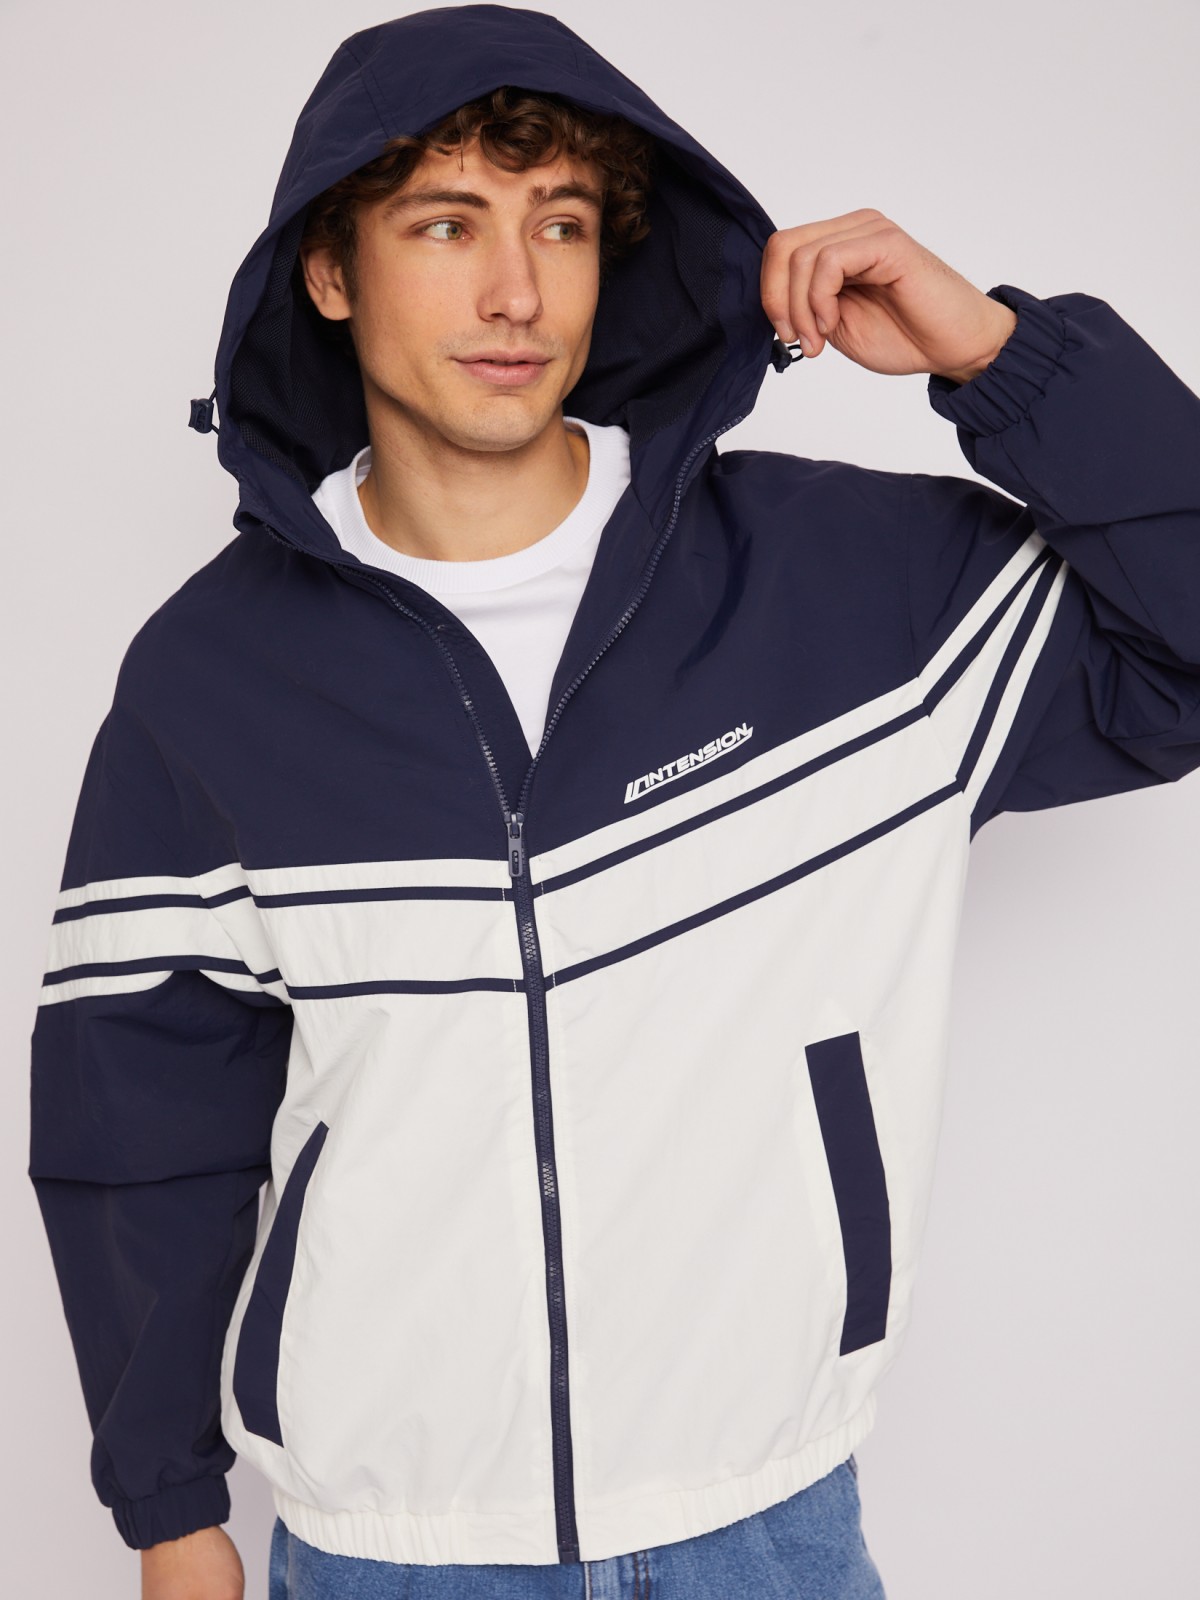 Куртка-ветровка с капюшоном в спортивном стиле zolla 014215650064, цвет синий, размер XL - фото 3